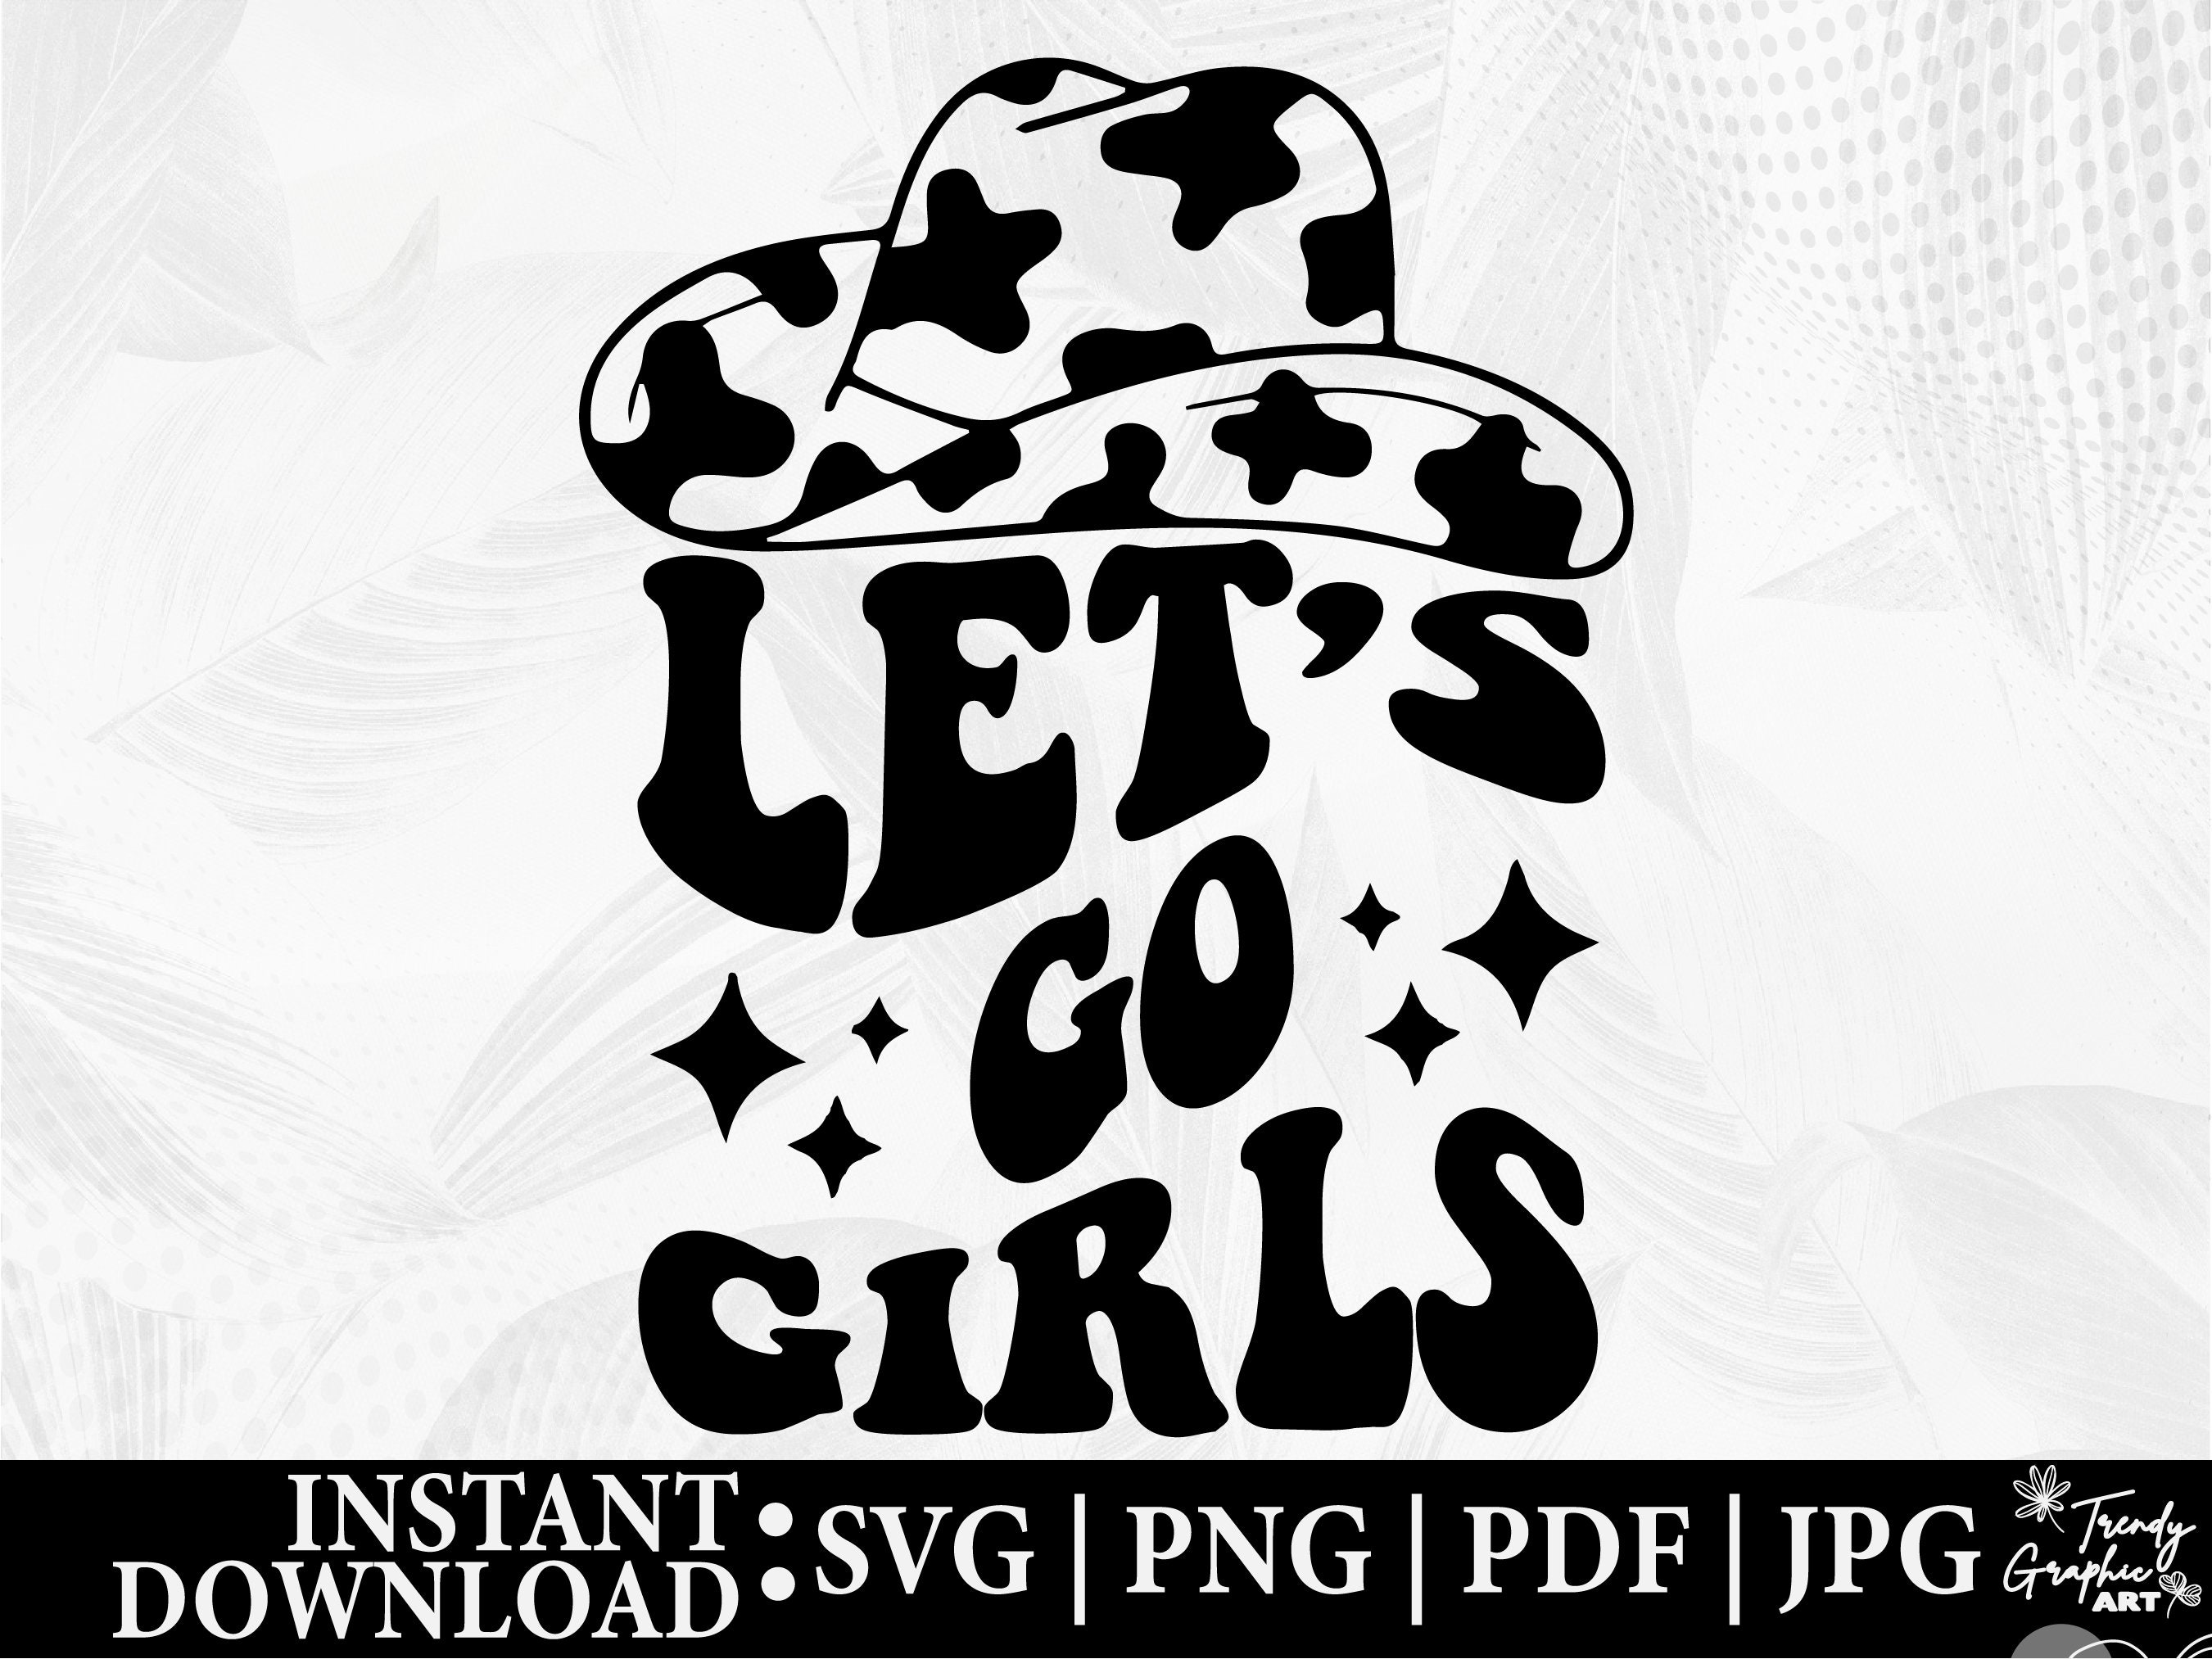 Let's go Mädchen hochauflösende PNG digitales Design Retro Cowgirl Hut  Discokugel rosa Sublimation und mehr -  Österreich